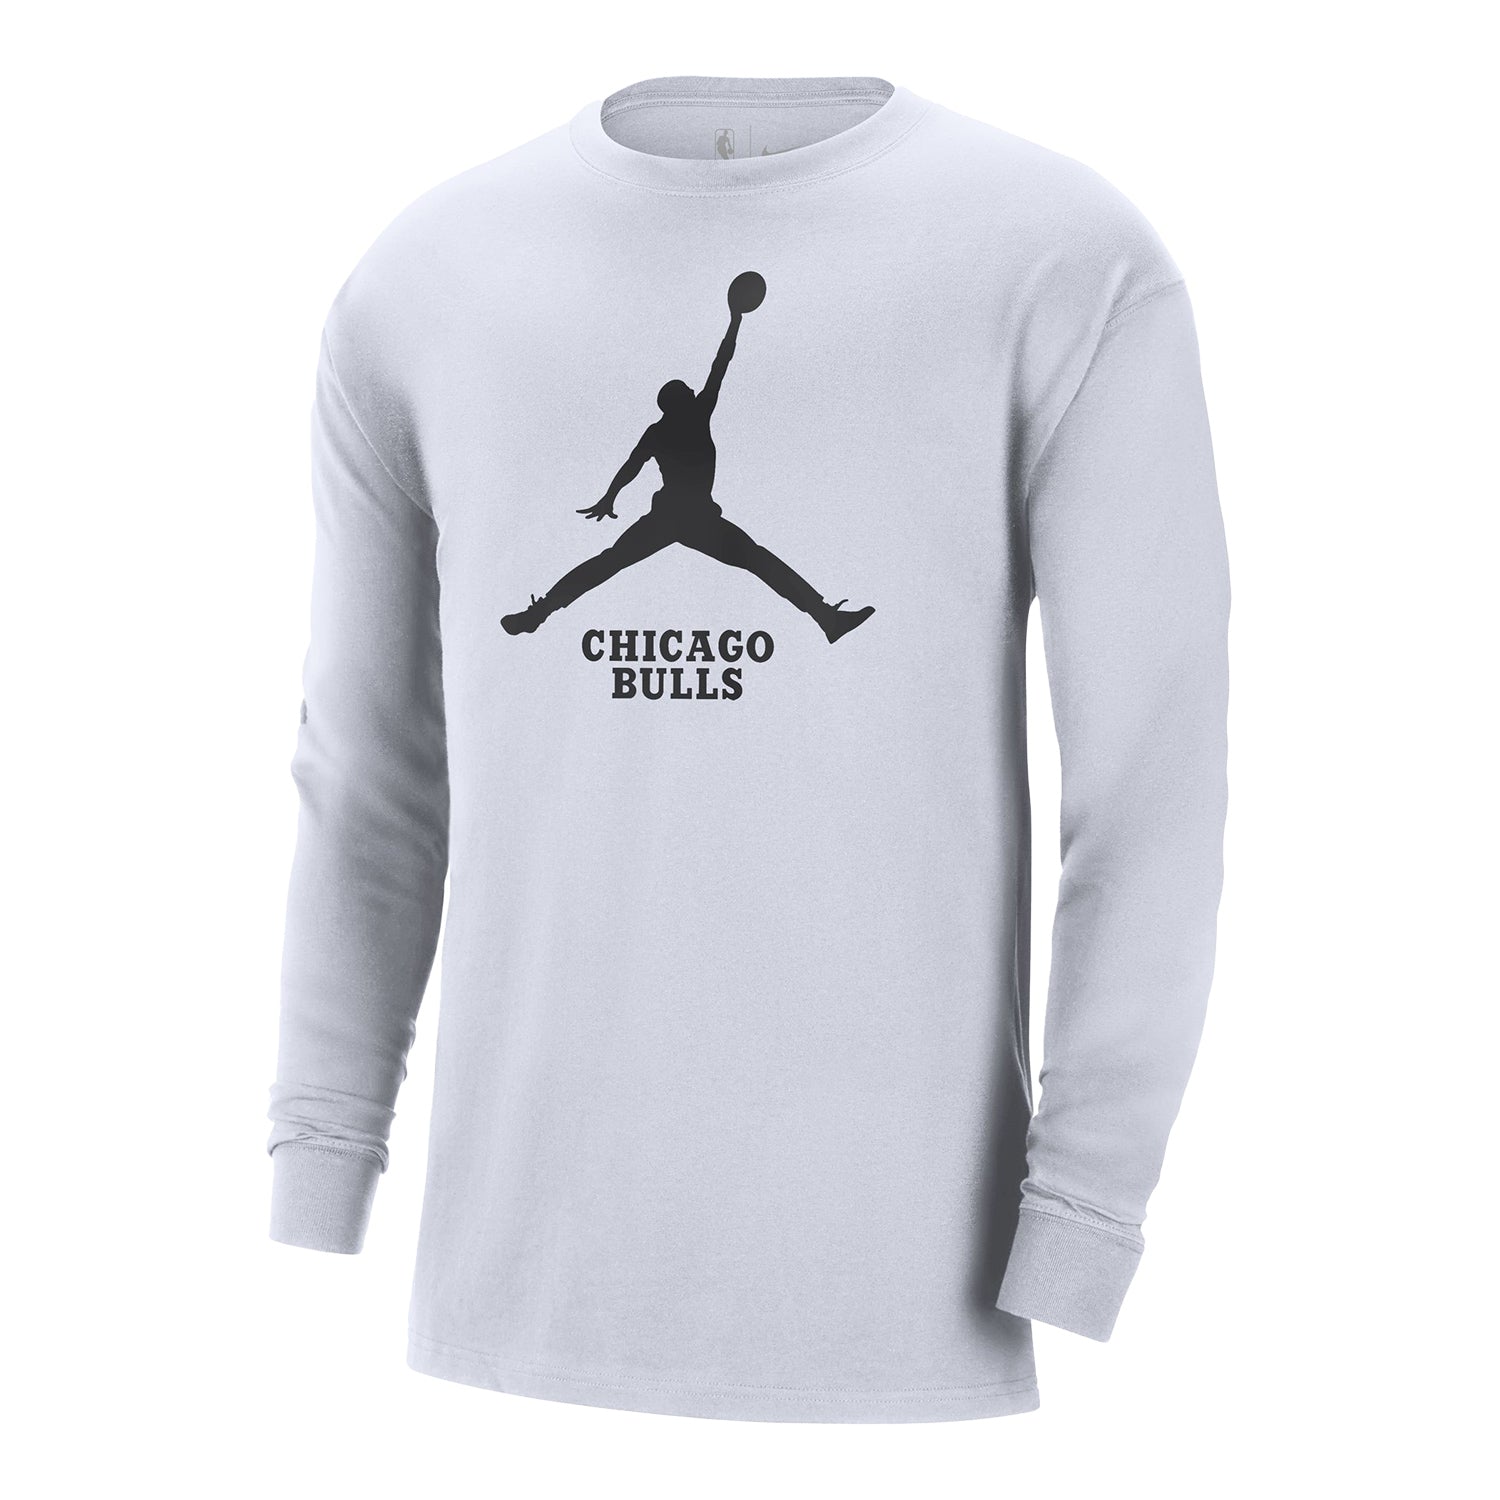 Chicago Bulls Nike Jordan White Long Sleeve T-Shirt – Official